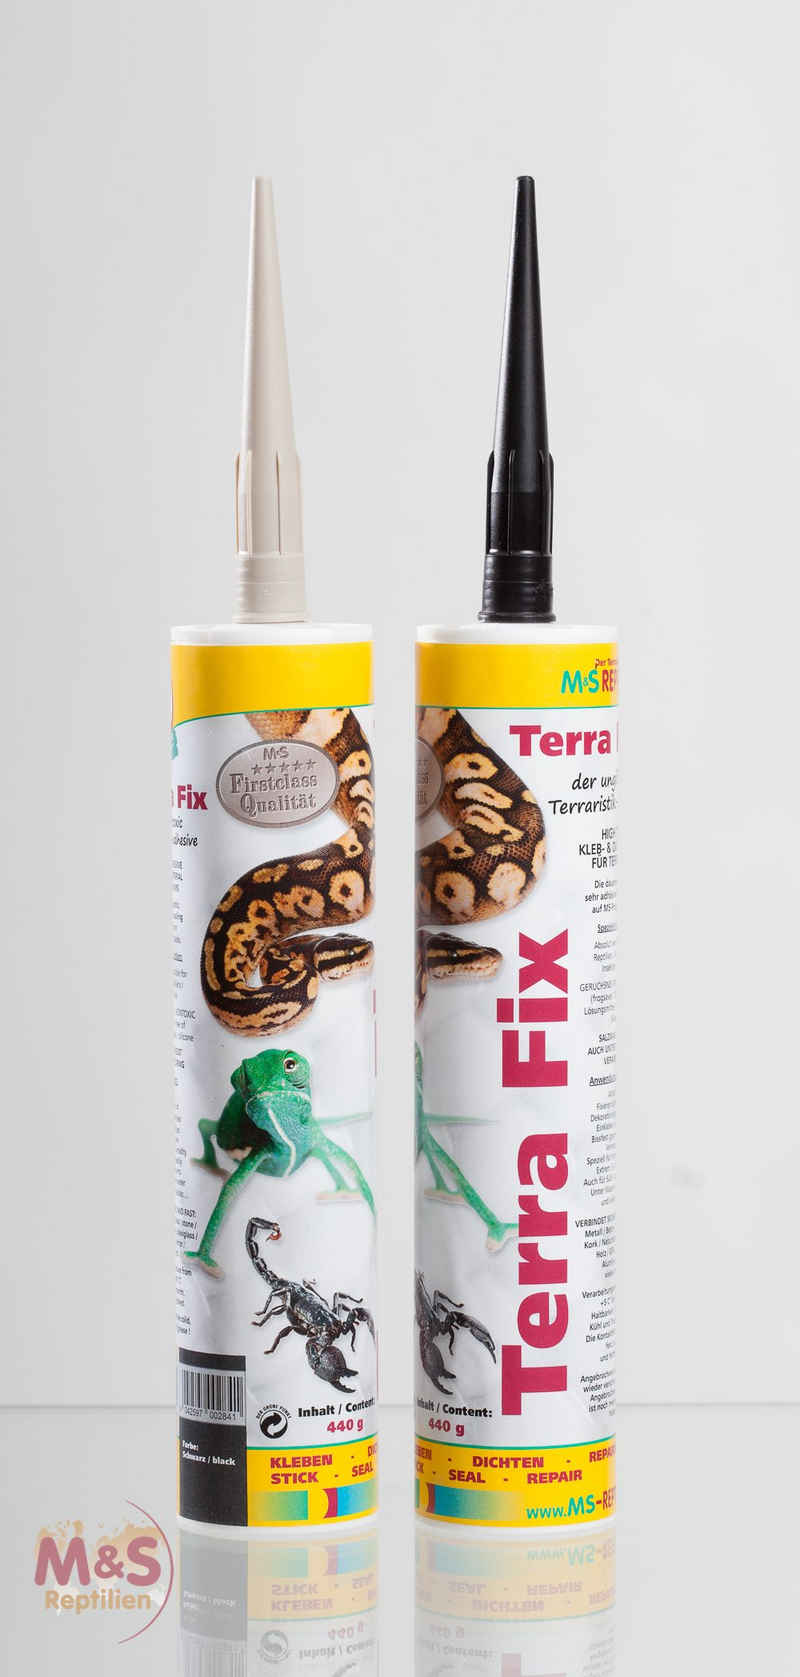 M&S Reptilien Terrarium Terra Fix - 290ml Kartusche - Farbe: beige (ehem. Terra Bond)